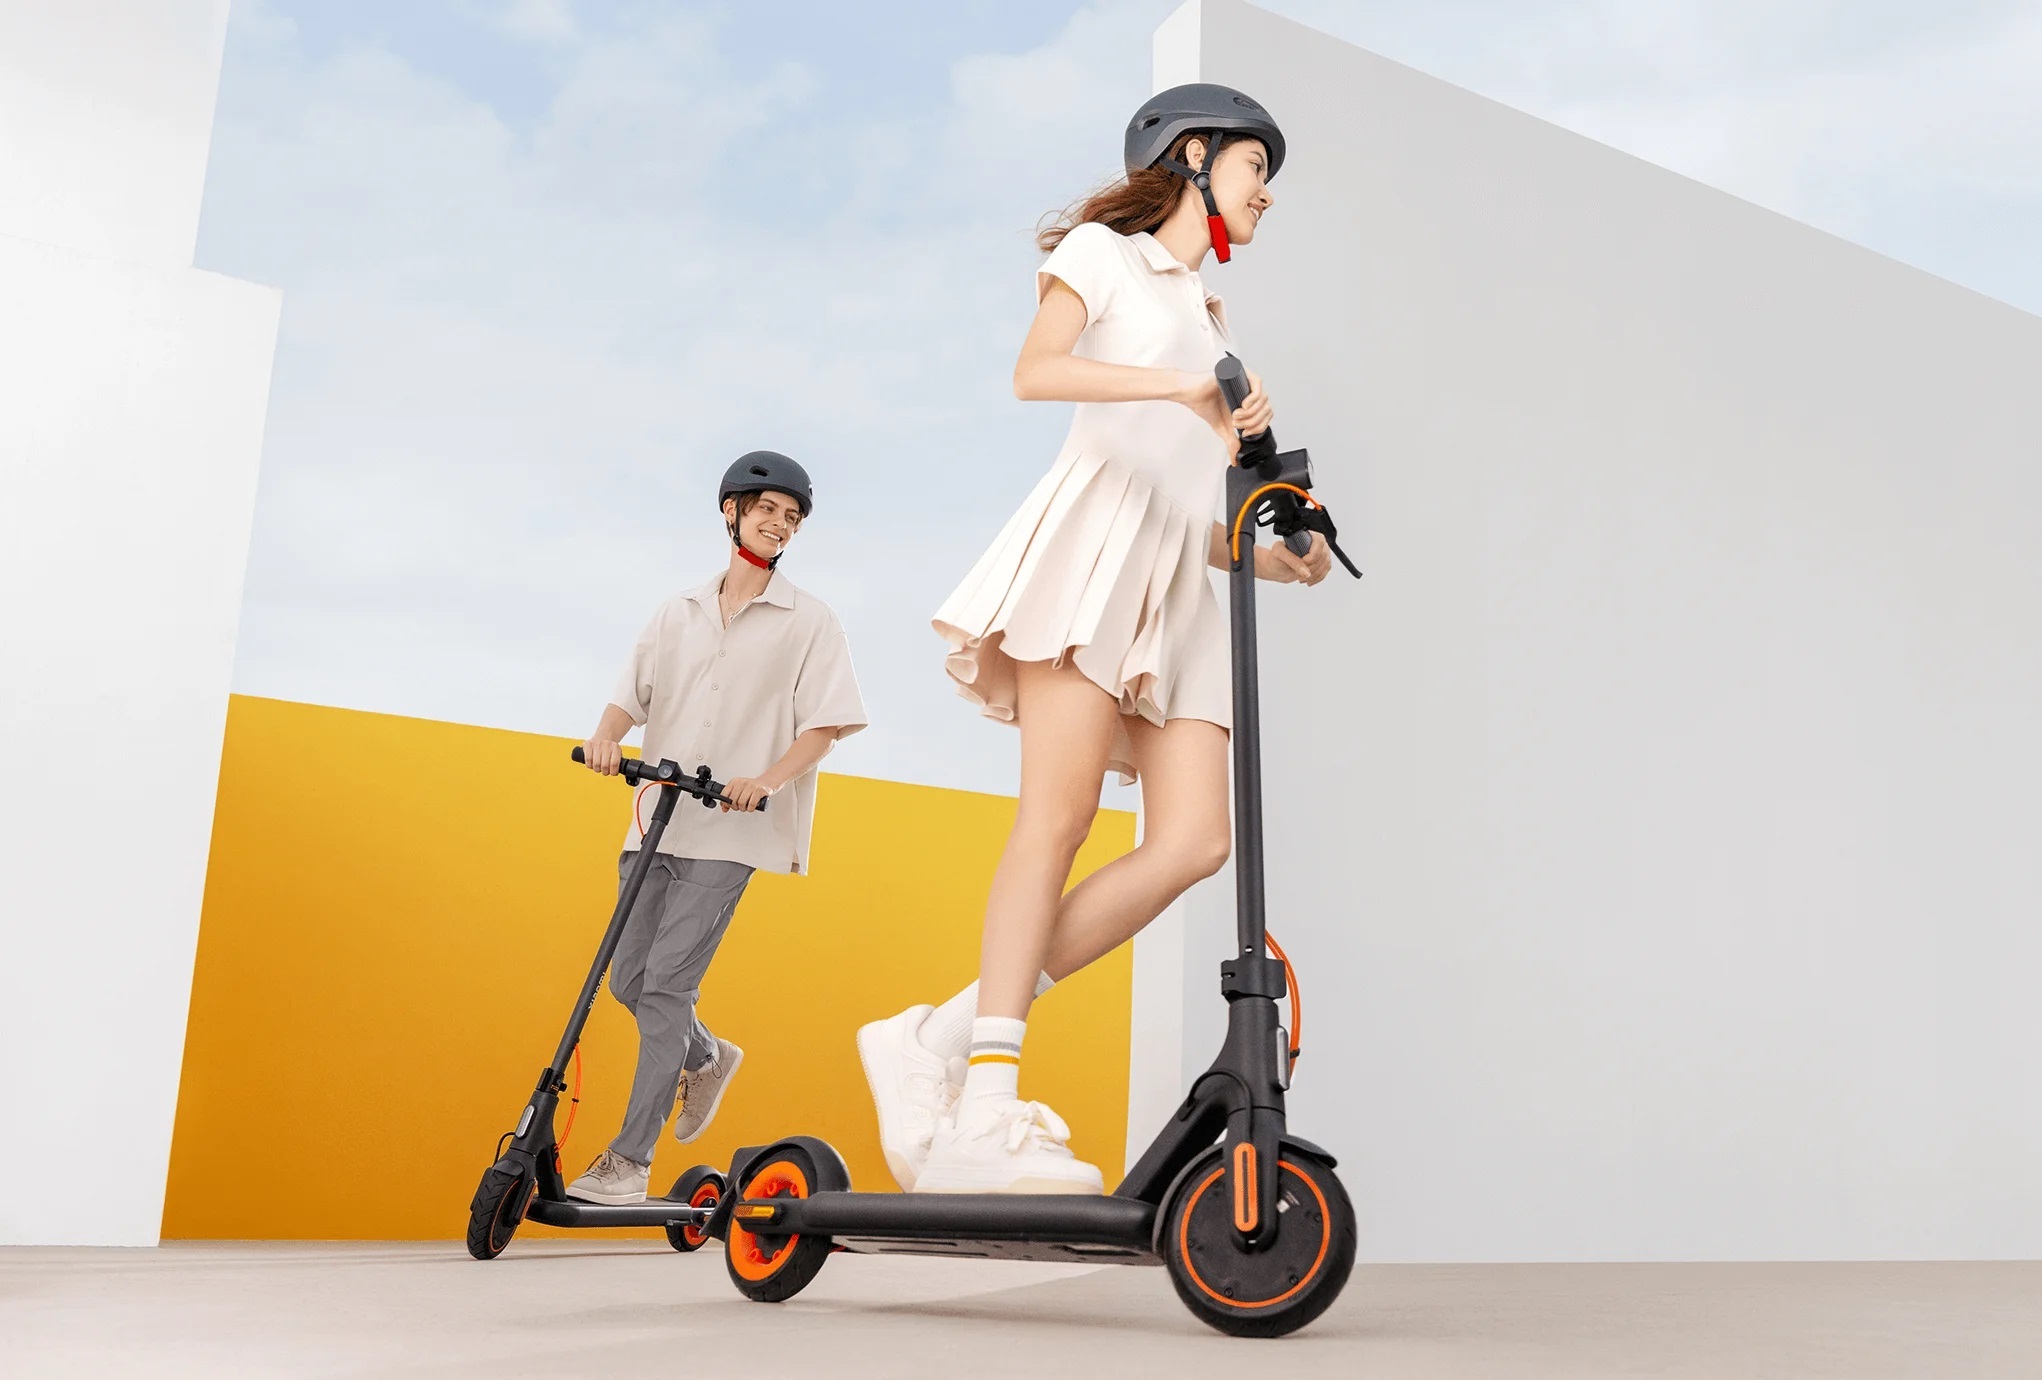 Xiaomi Electric Scooter 4 Go: niedrogi skuter elektryczny z silnikiem 450 W i zasięgiem 18 km